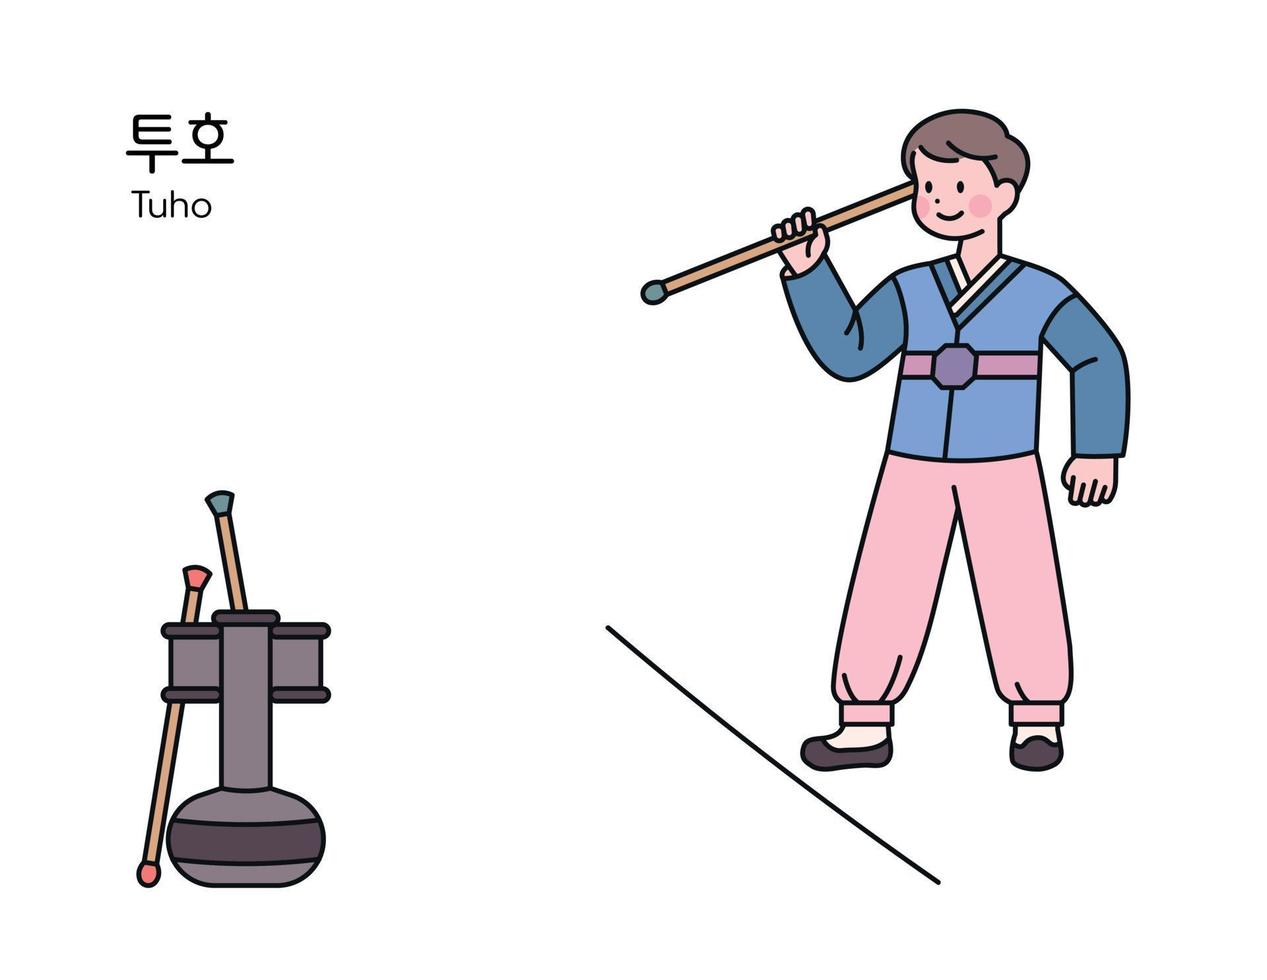 jeu traditionnel coréen. un garçon portant un hanbok joue à un jeu consistant à lancer une flèche dans un bocal. vecteur